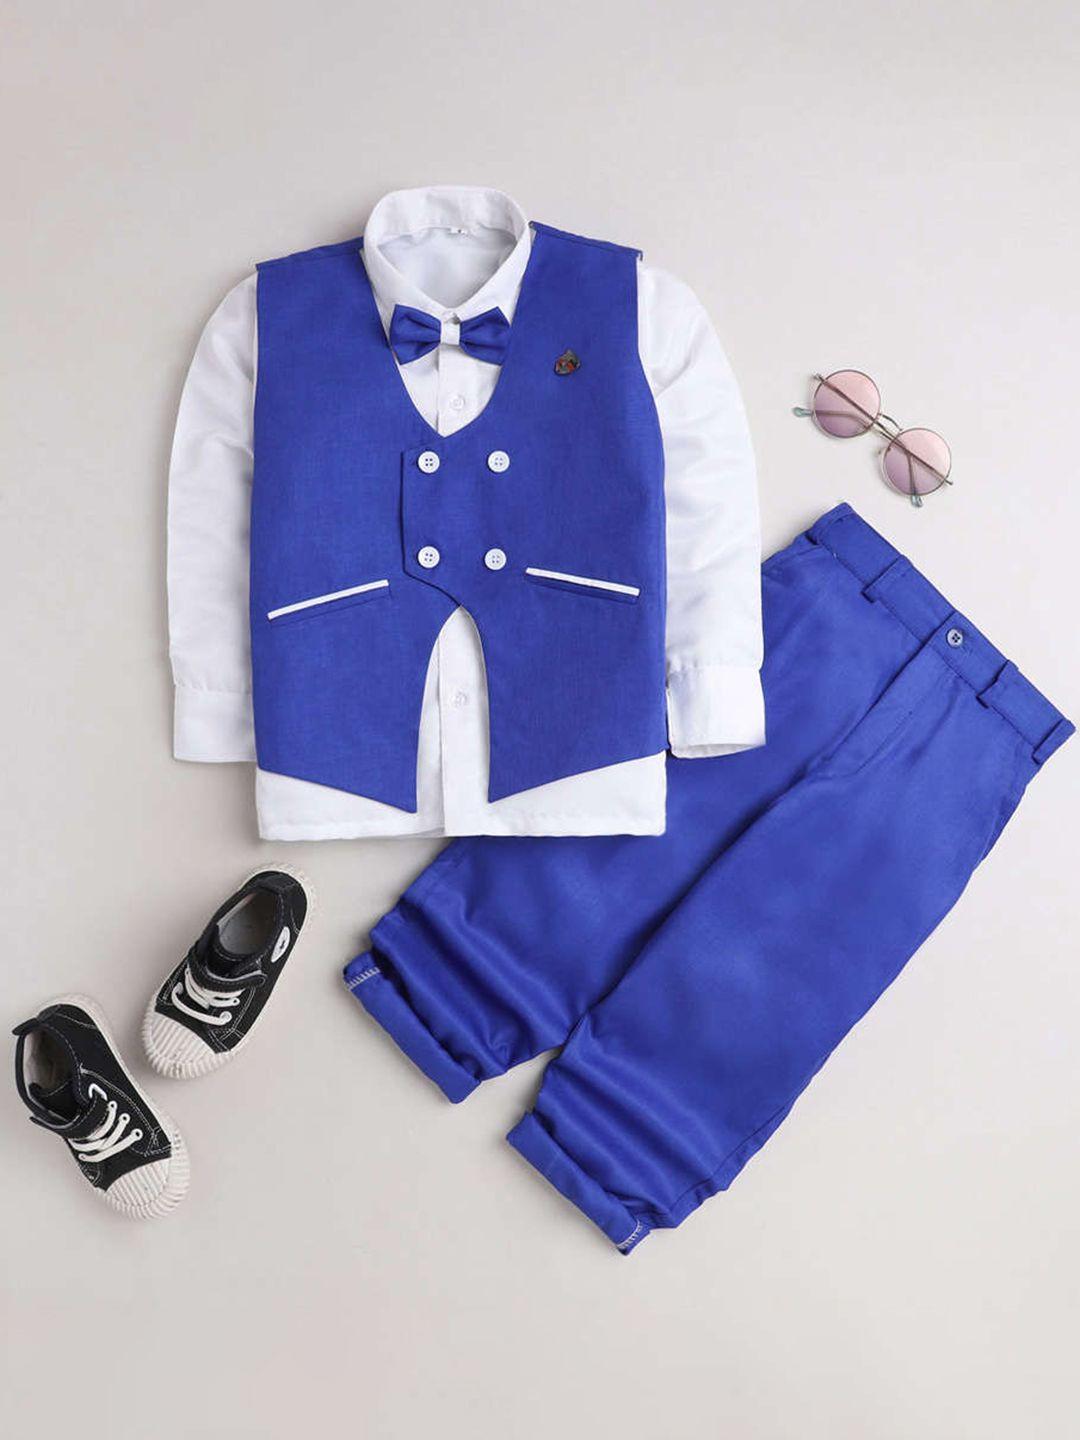 dkgf fashion boys navy blue & white solid 3 piece cotton blend suit